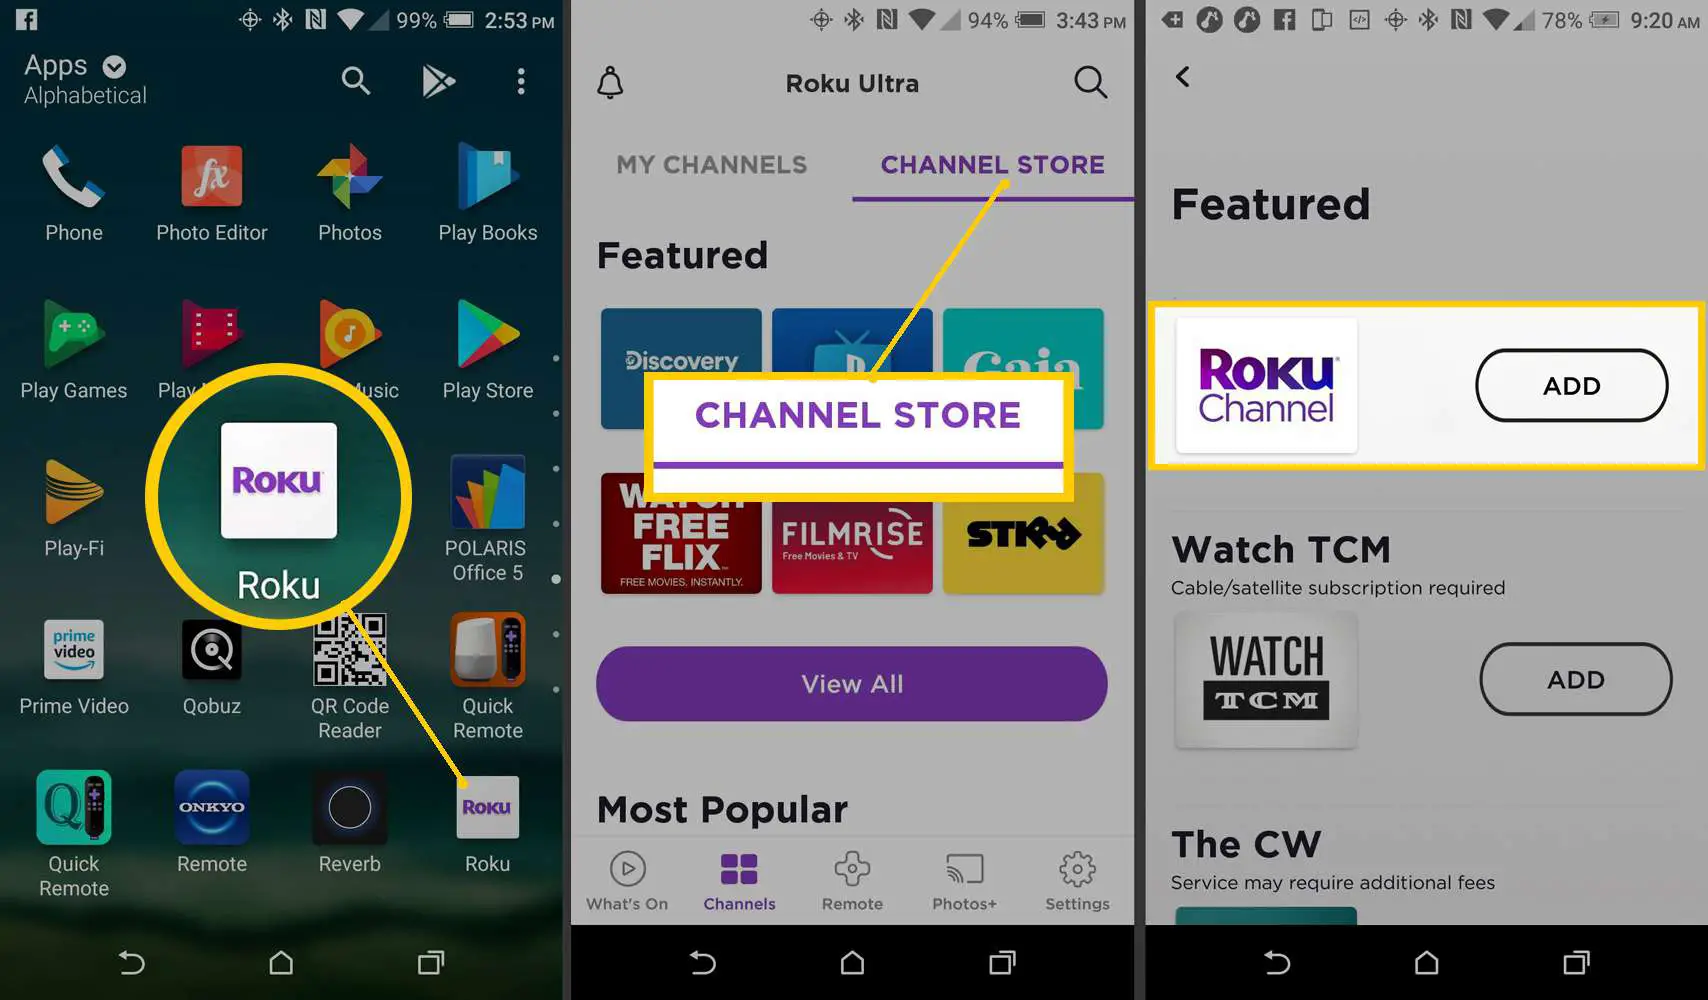 Roku Mobile App - Adicionando o canal Roku